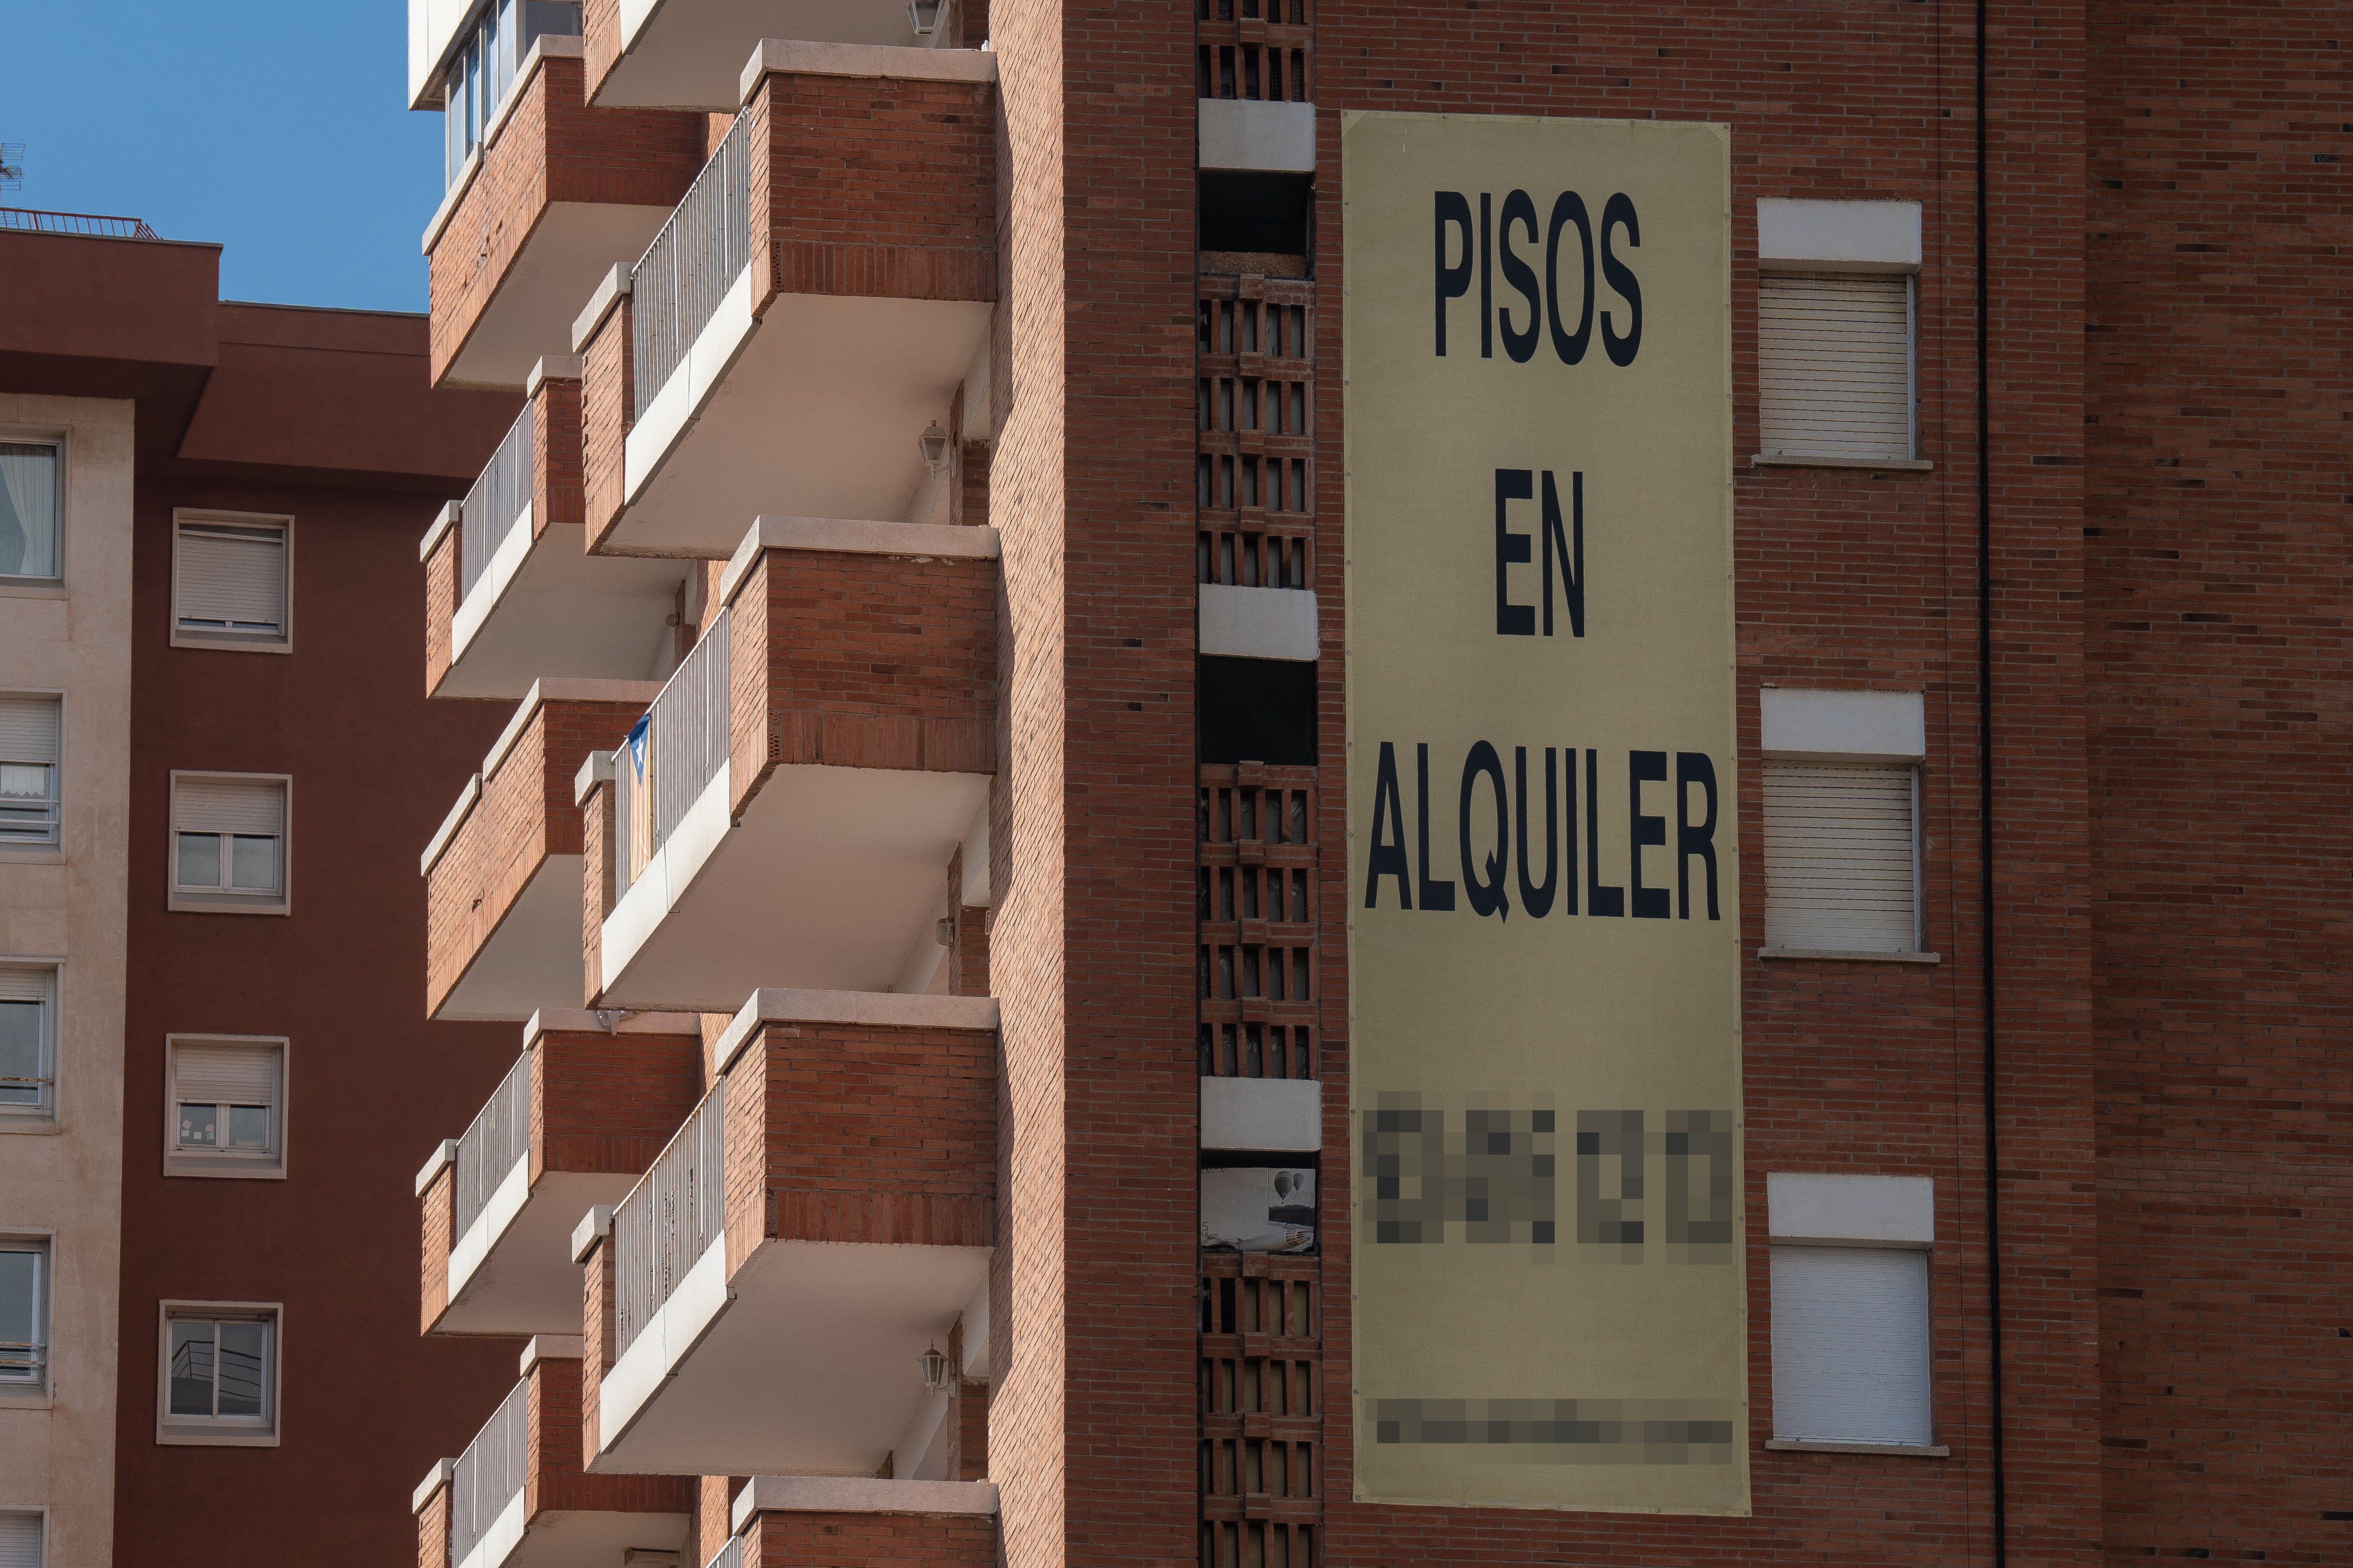 Cartel de alquiler de viviendas en la fachada de un edificio./EuropaPress